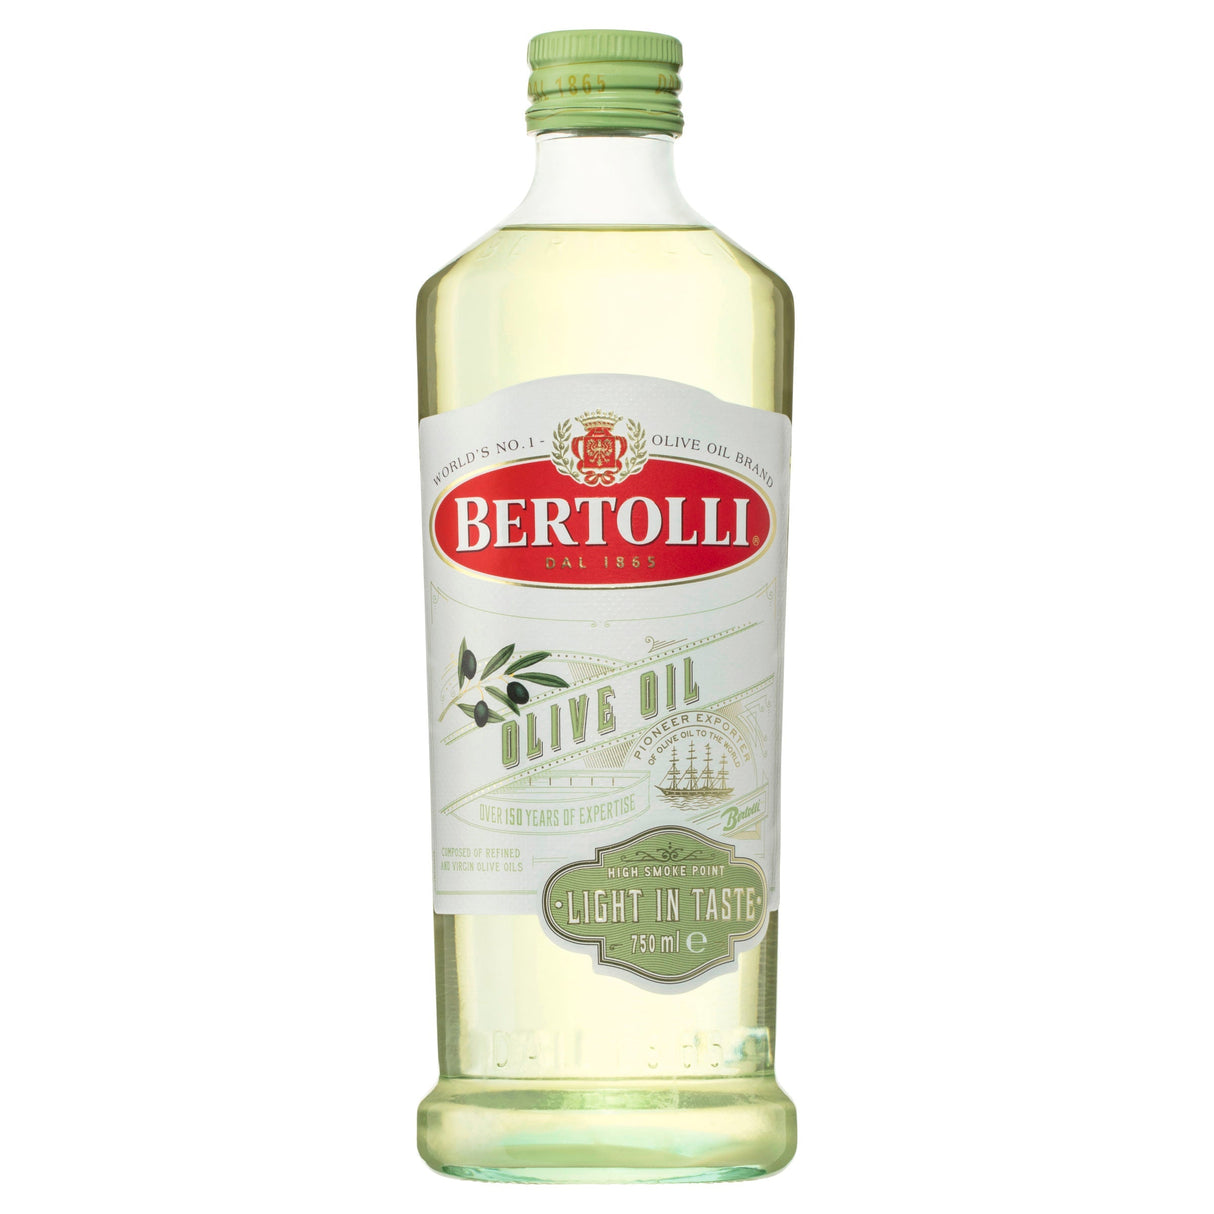 Bertolli Light in Taste Olive Oil 750ml